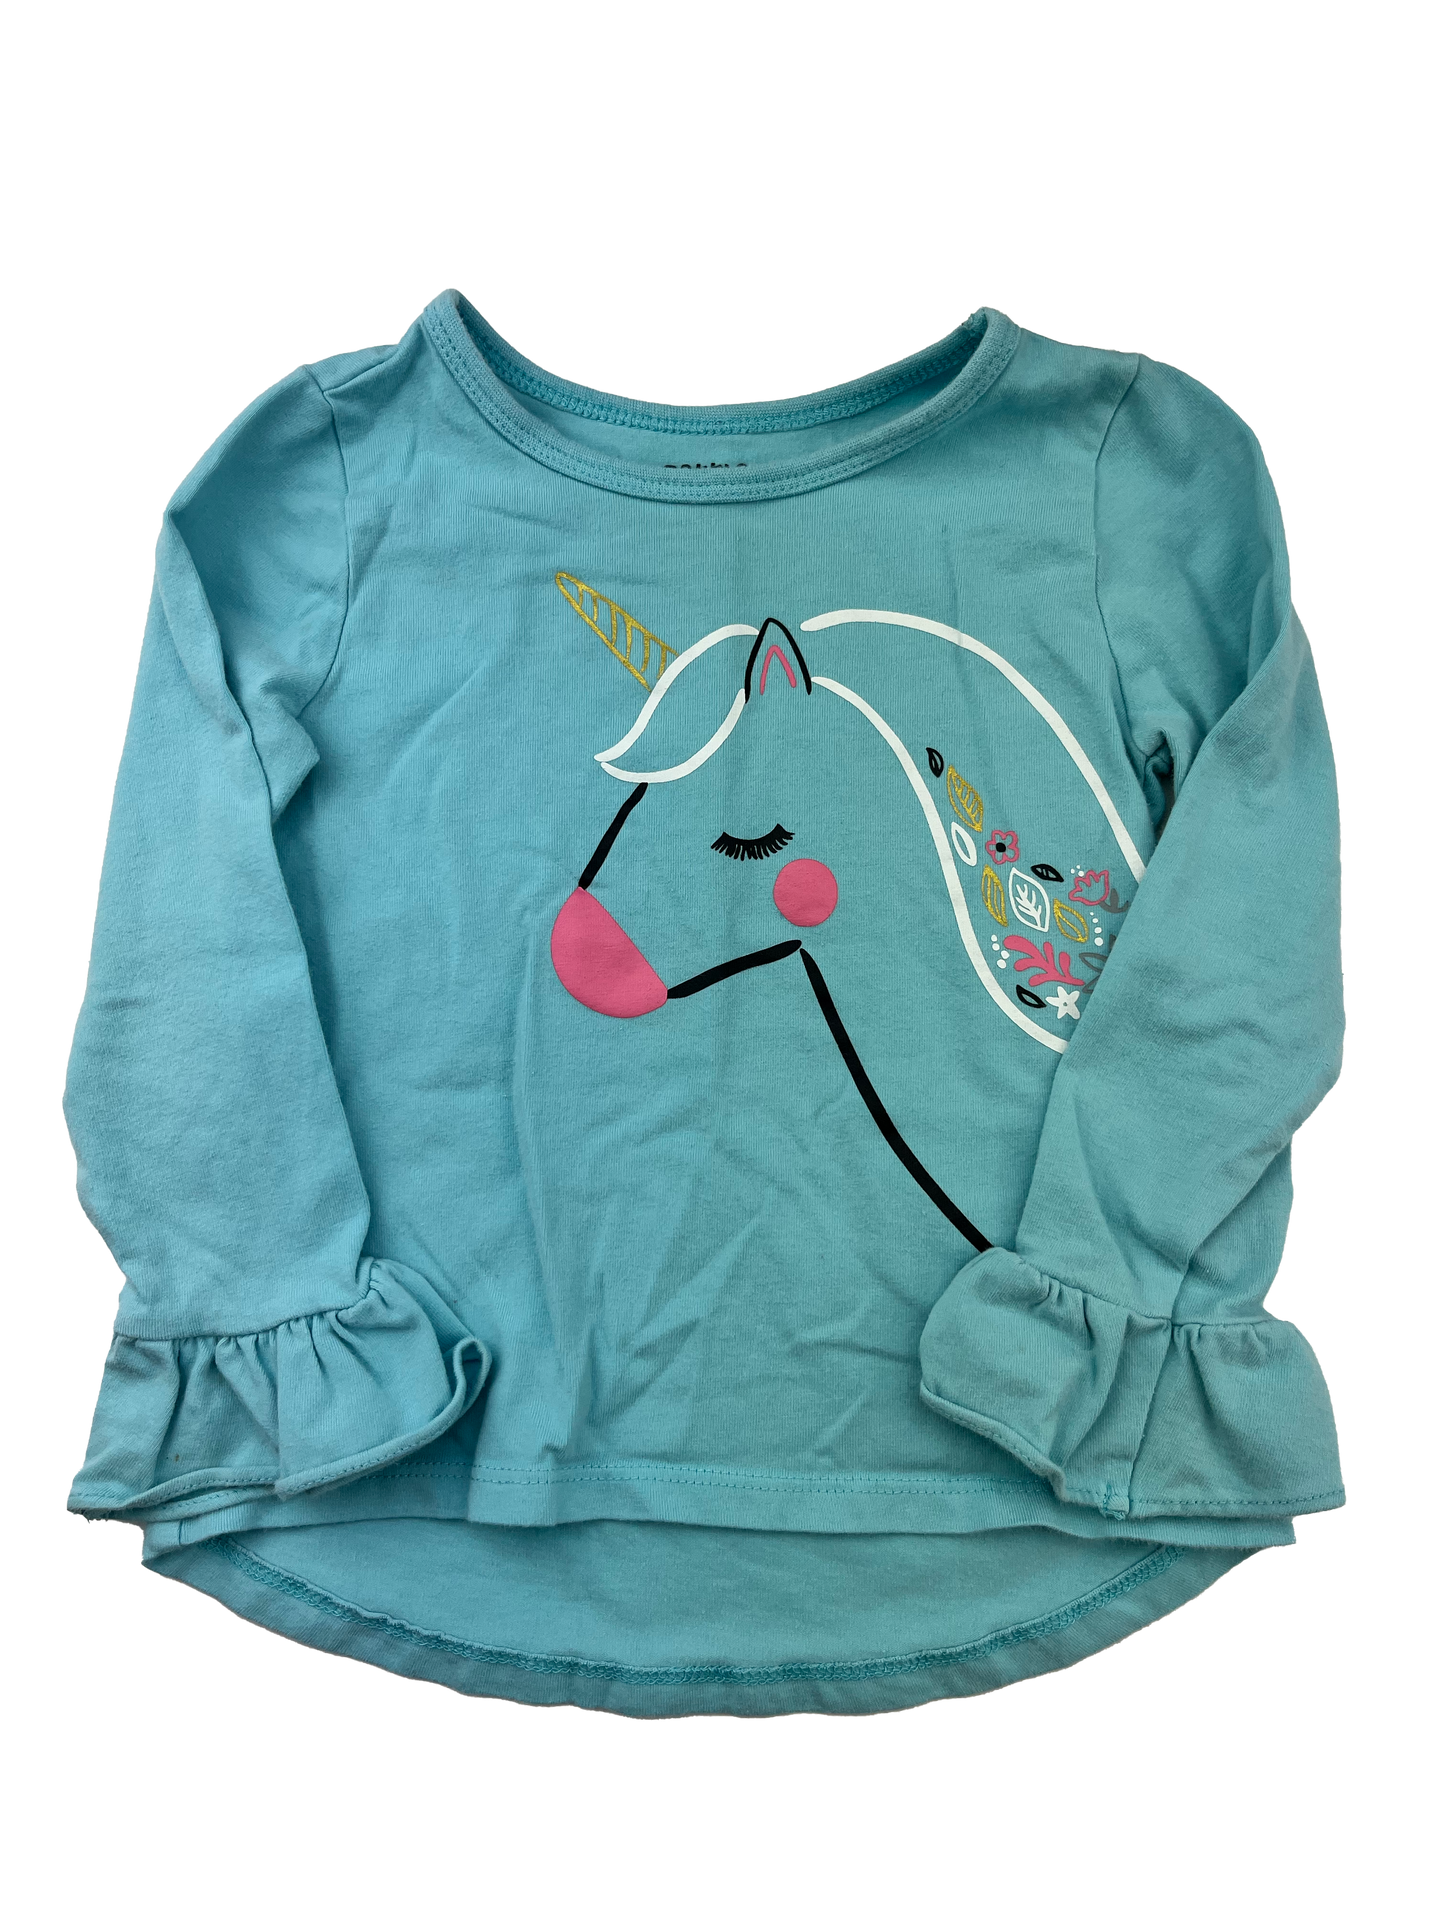 Pekkle Turquoise Long Sleeve Shirt with Unicorn 24M